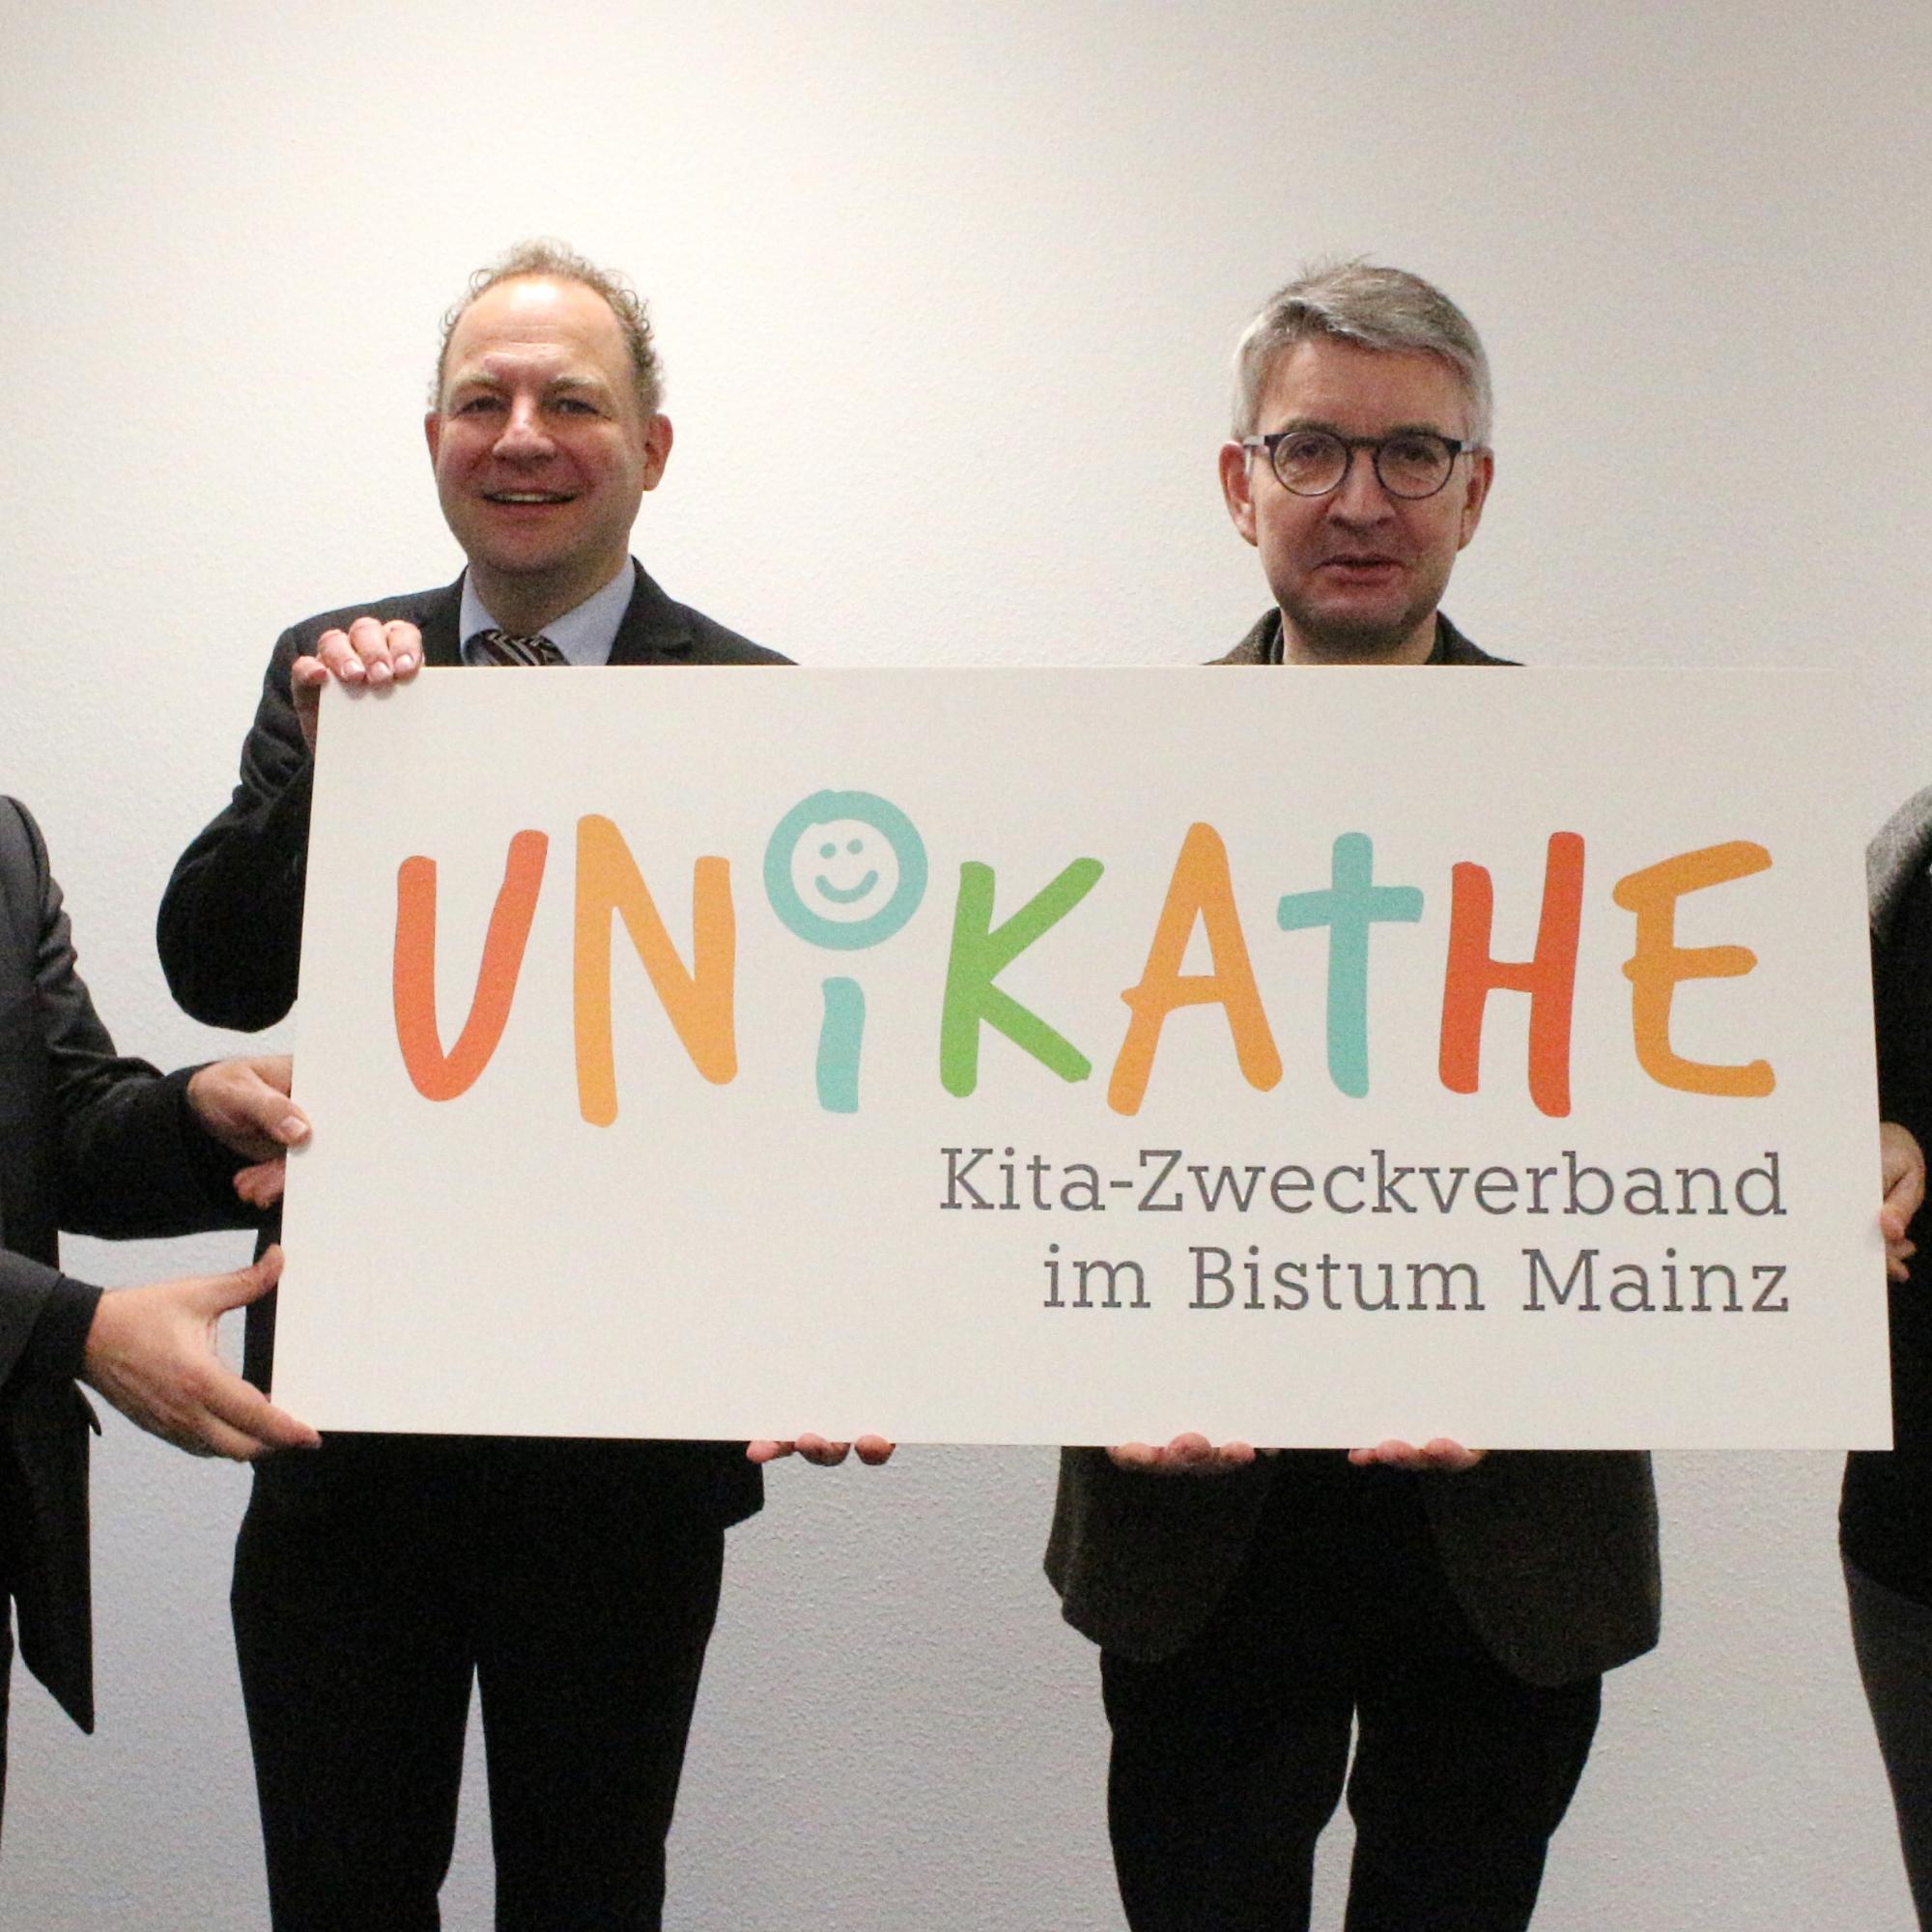 Mainz, 30. November 2021: Am 1. Juli 2022 geht der neue Kita-Zweckverband 